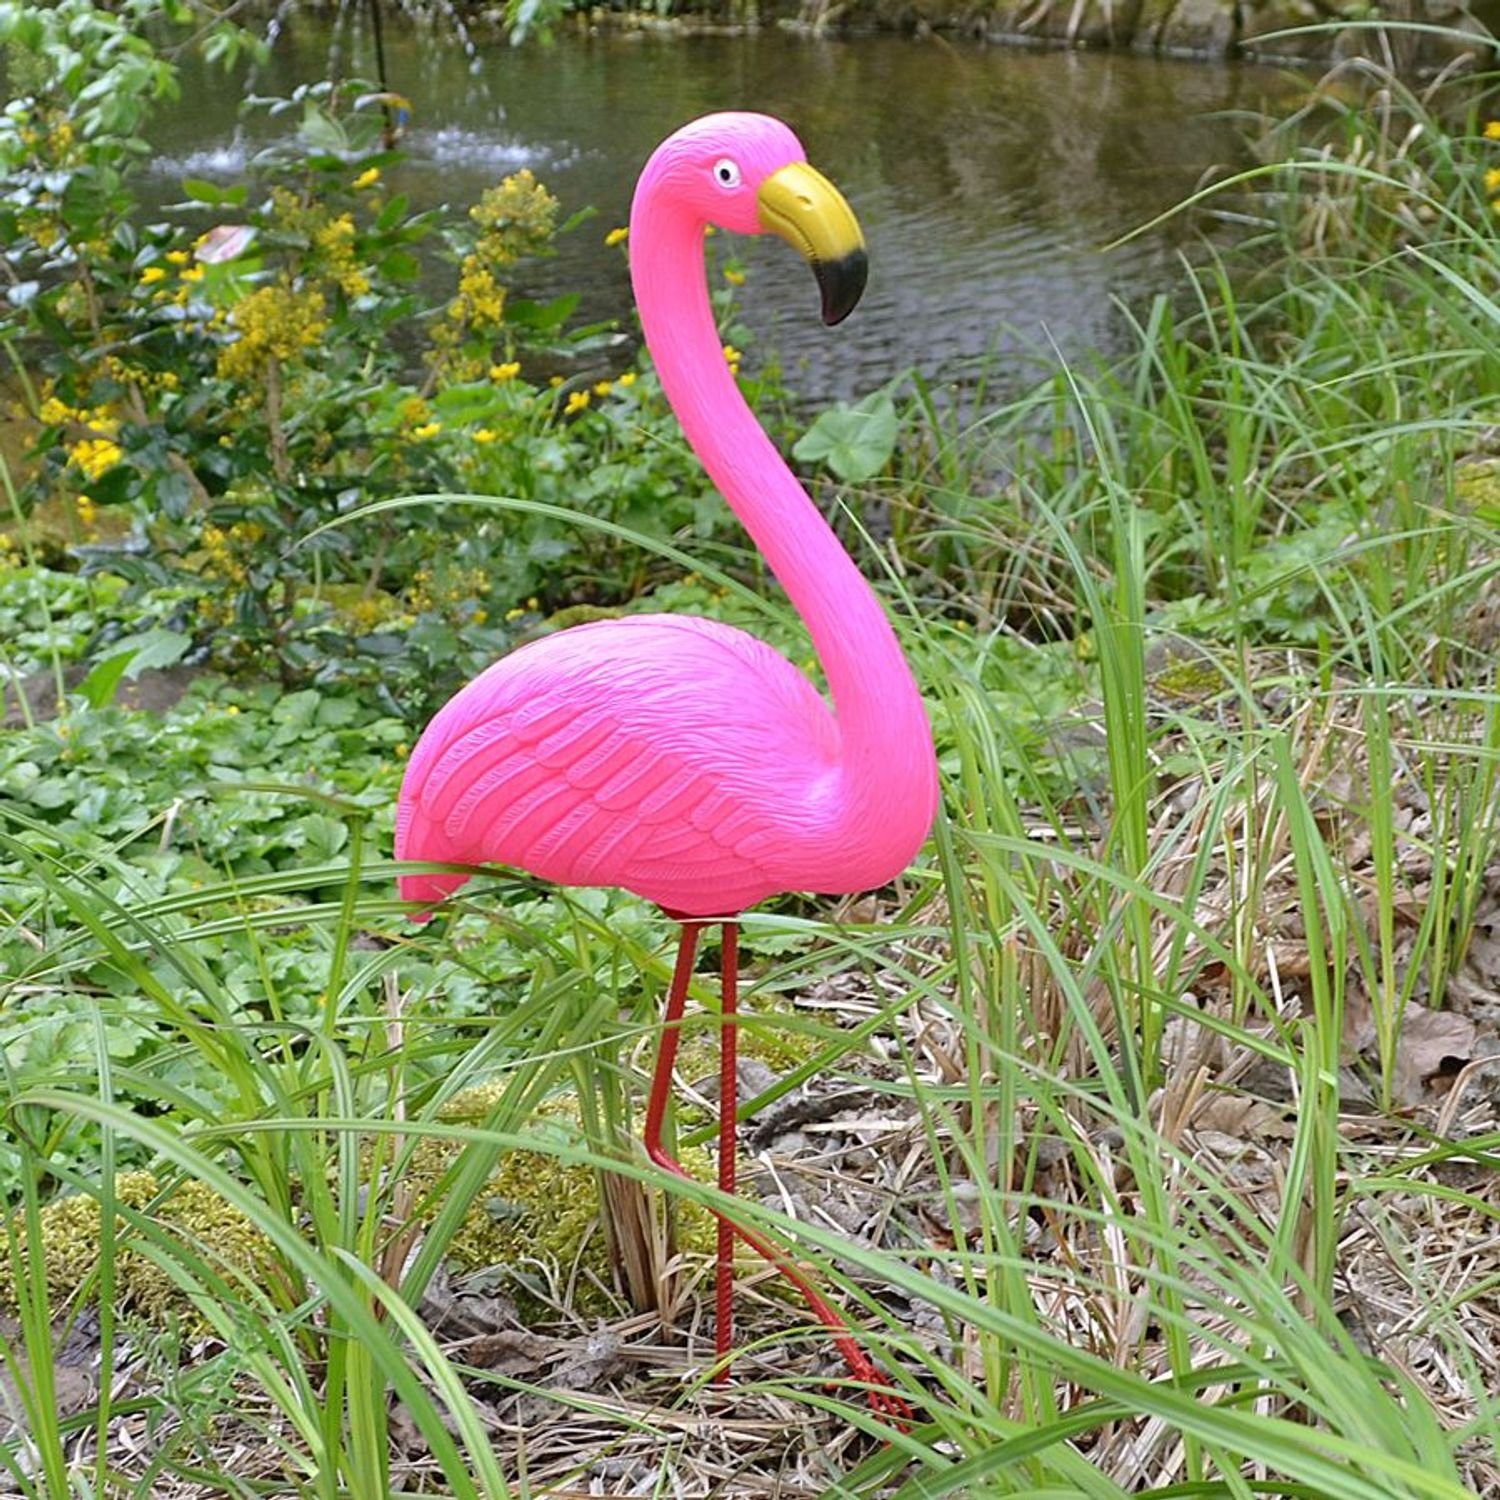 Teichfigur Gartenstecker Gartenstecker BURI Teichdeko 56cm Gartenfigur Flamingo Gartendek